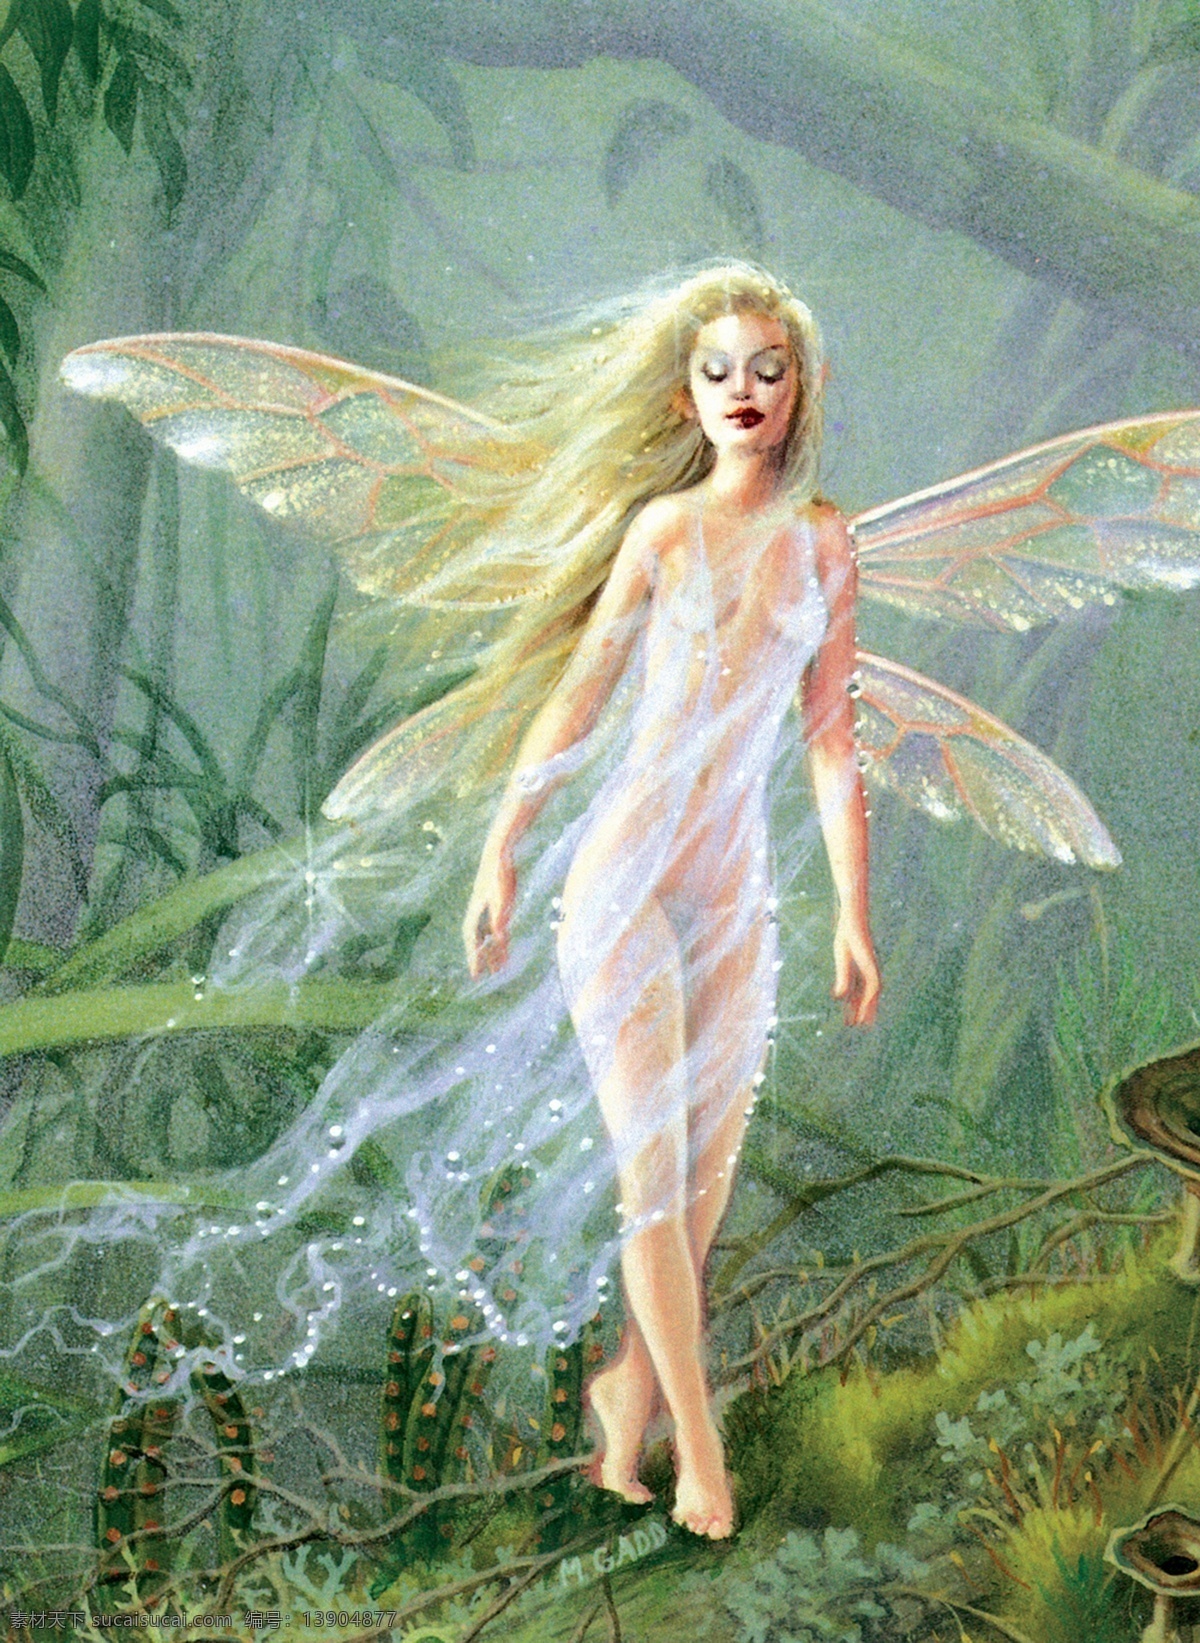 插画 插图 翅膀 动漫 绘画书法 精灵 美女 欧洲 美丽女神 仙女 树 树枝 神话 童话 文化艺术